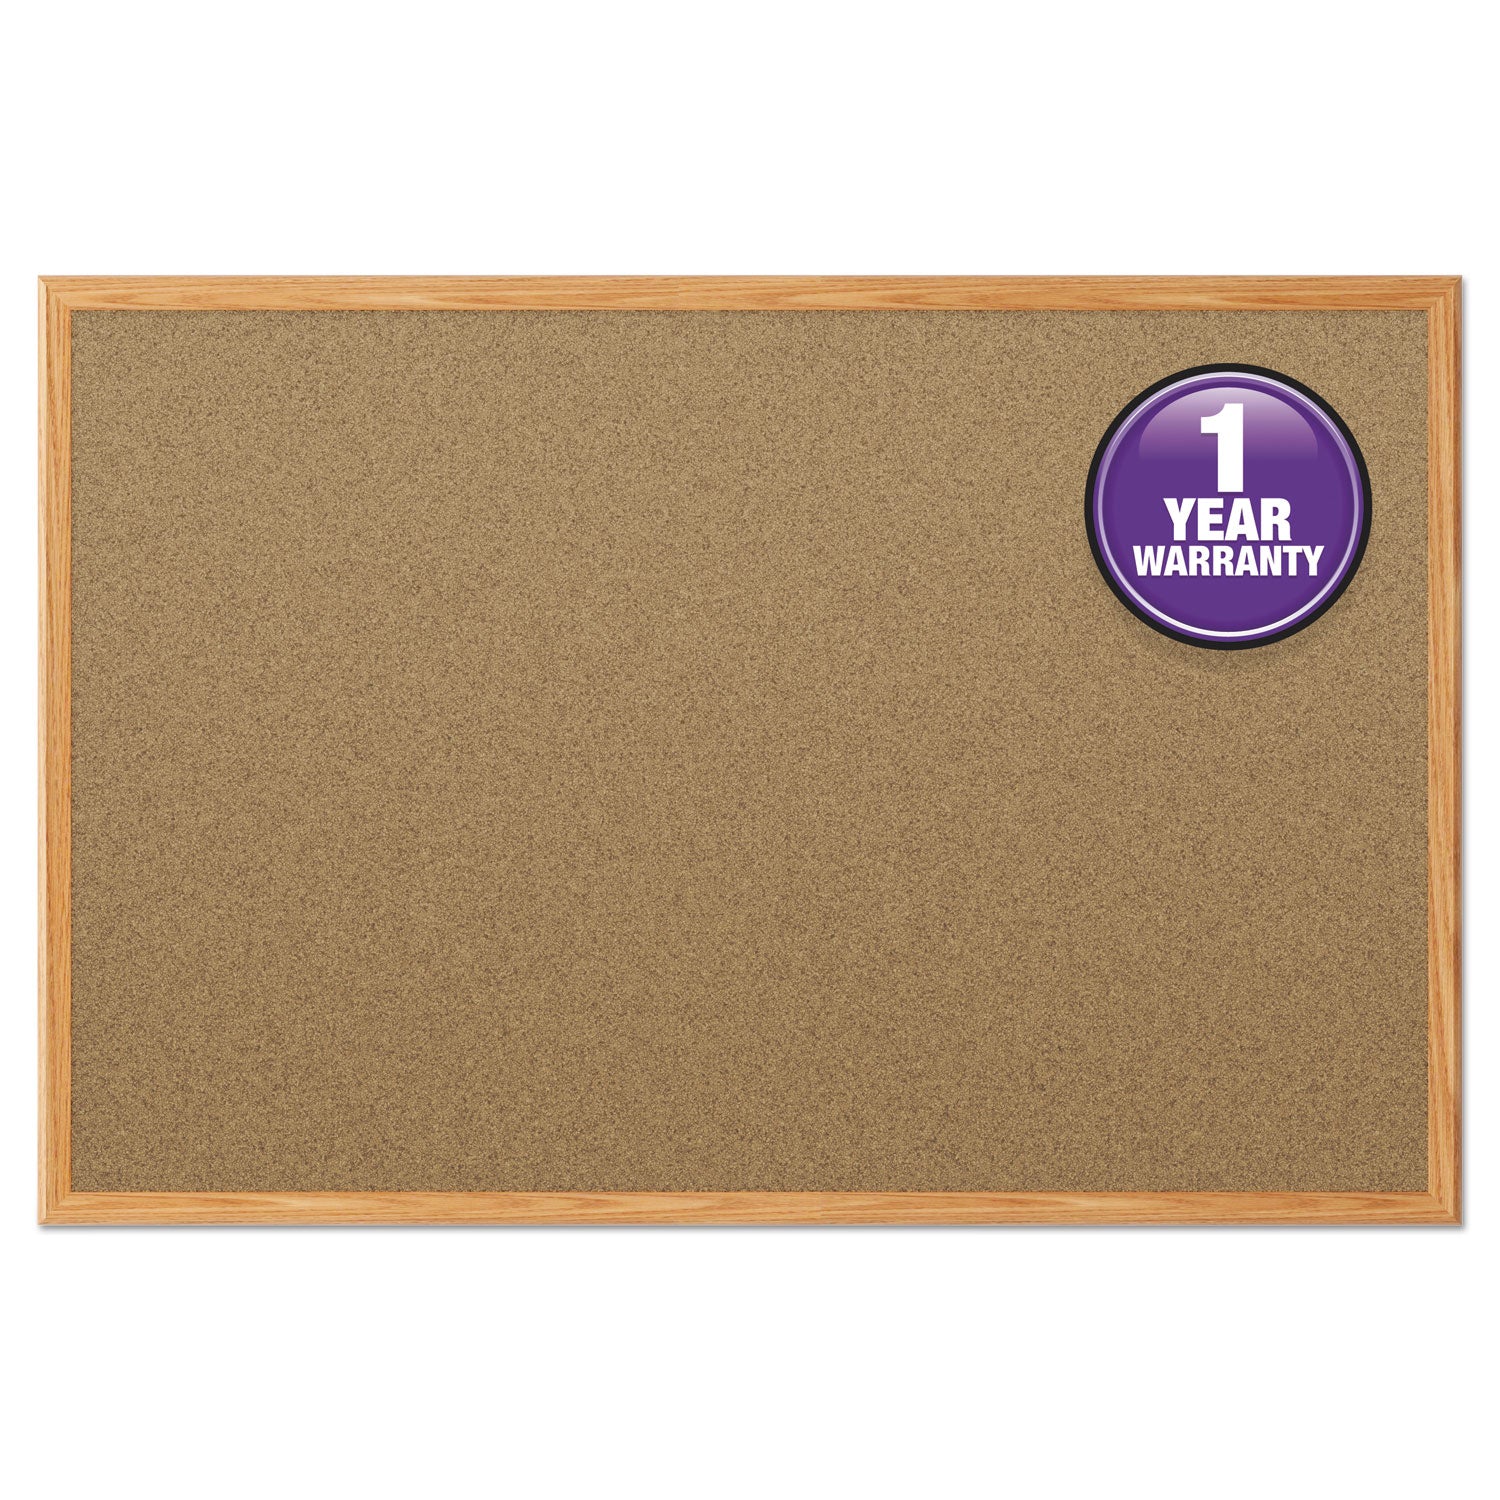 Economy Cork Board with Oak Frame, 48 x 36, Tan Surface, Oak Fiberboard Frame - 